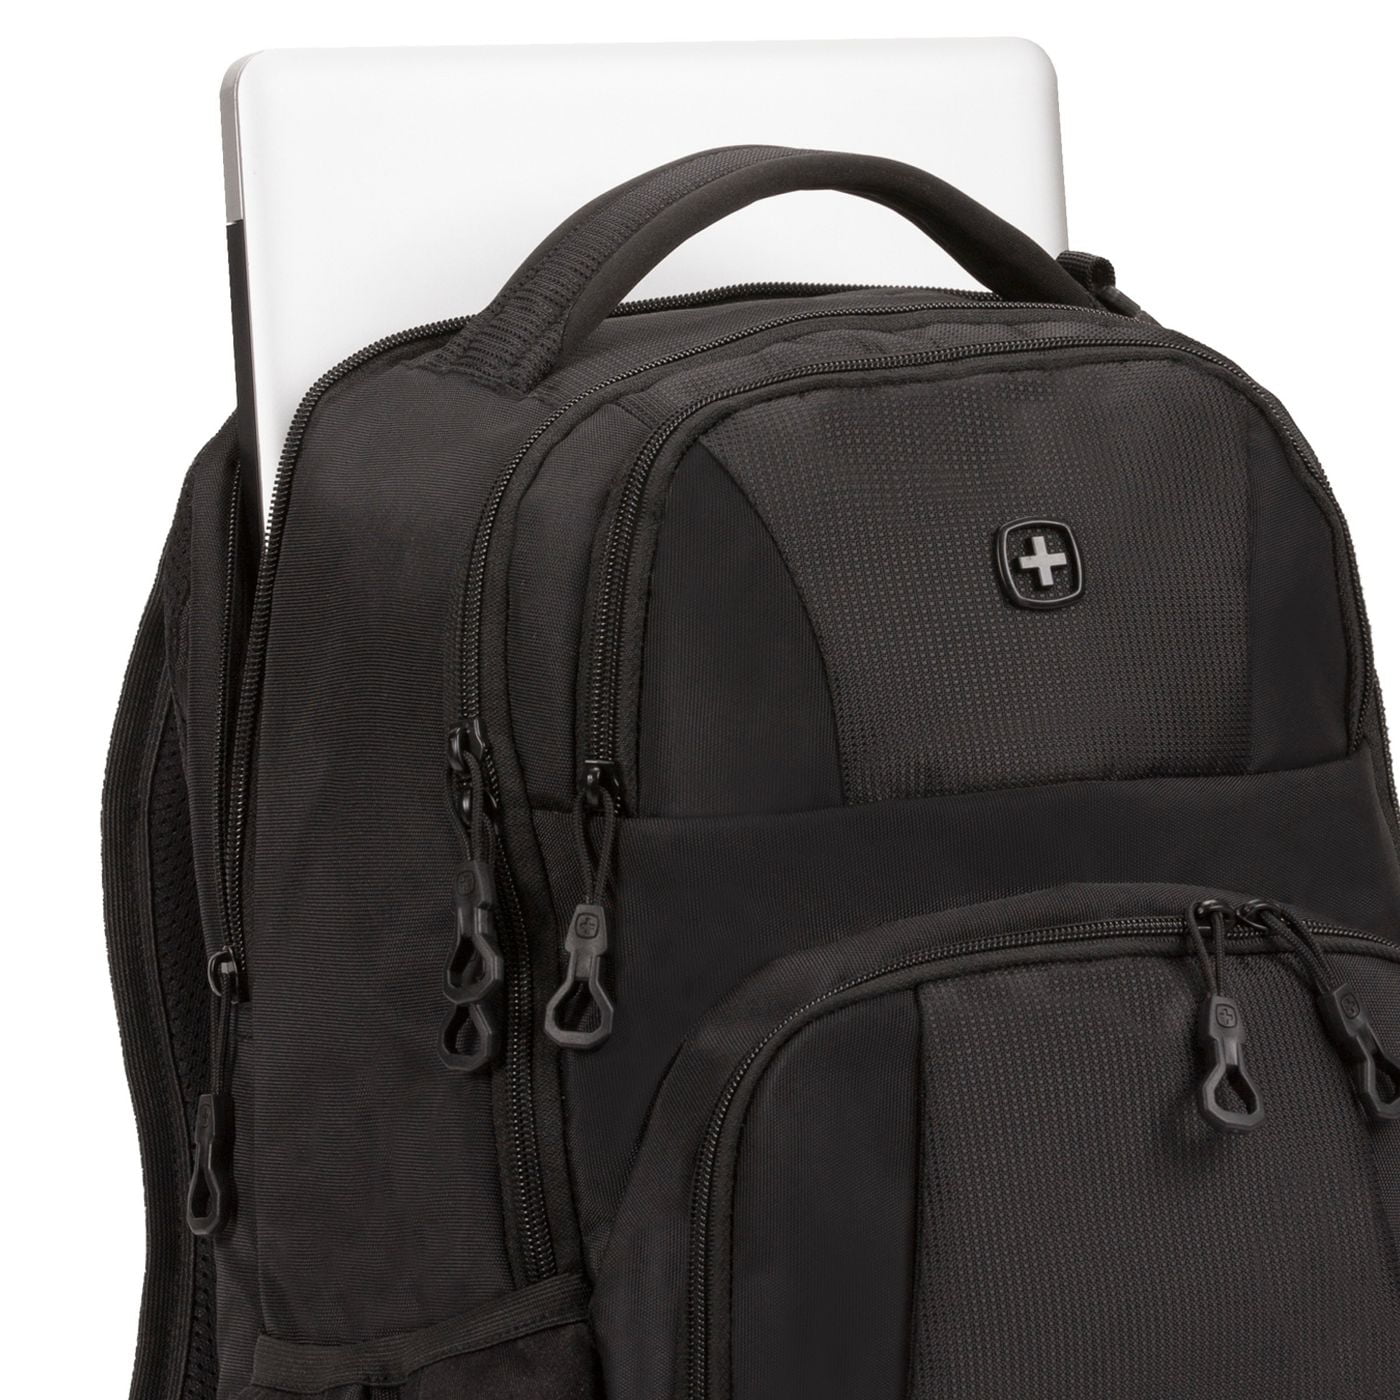 Zentauron Sprinter Pack Backpack Side Pockets - 2 Liters Volume